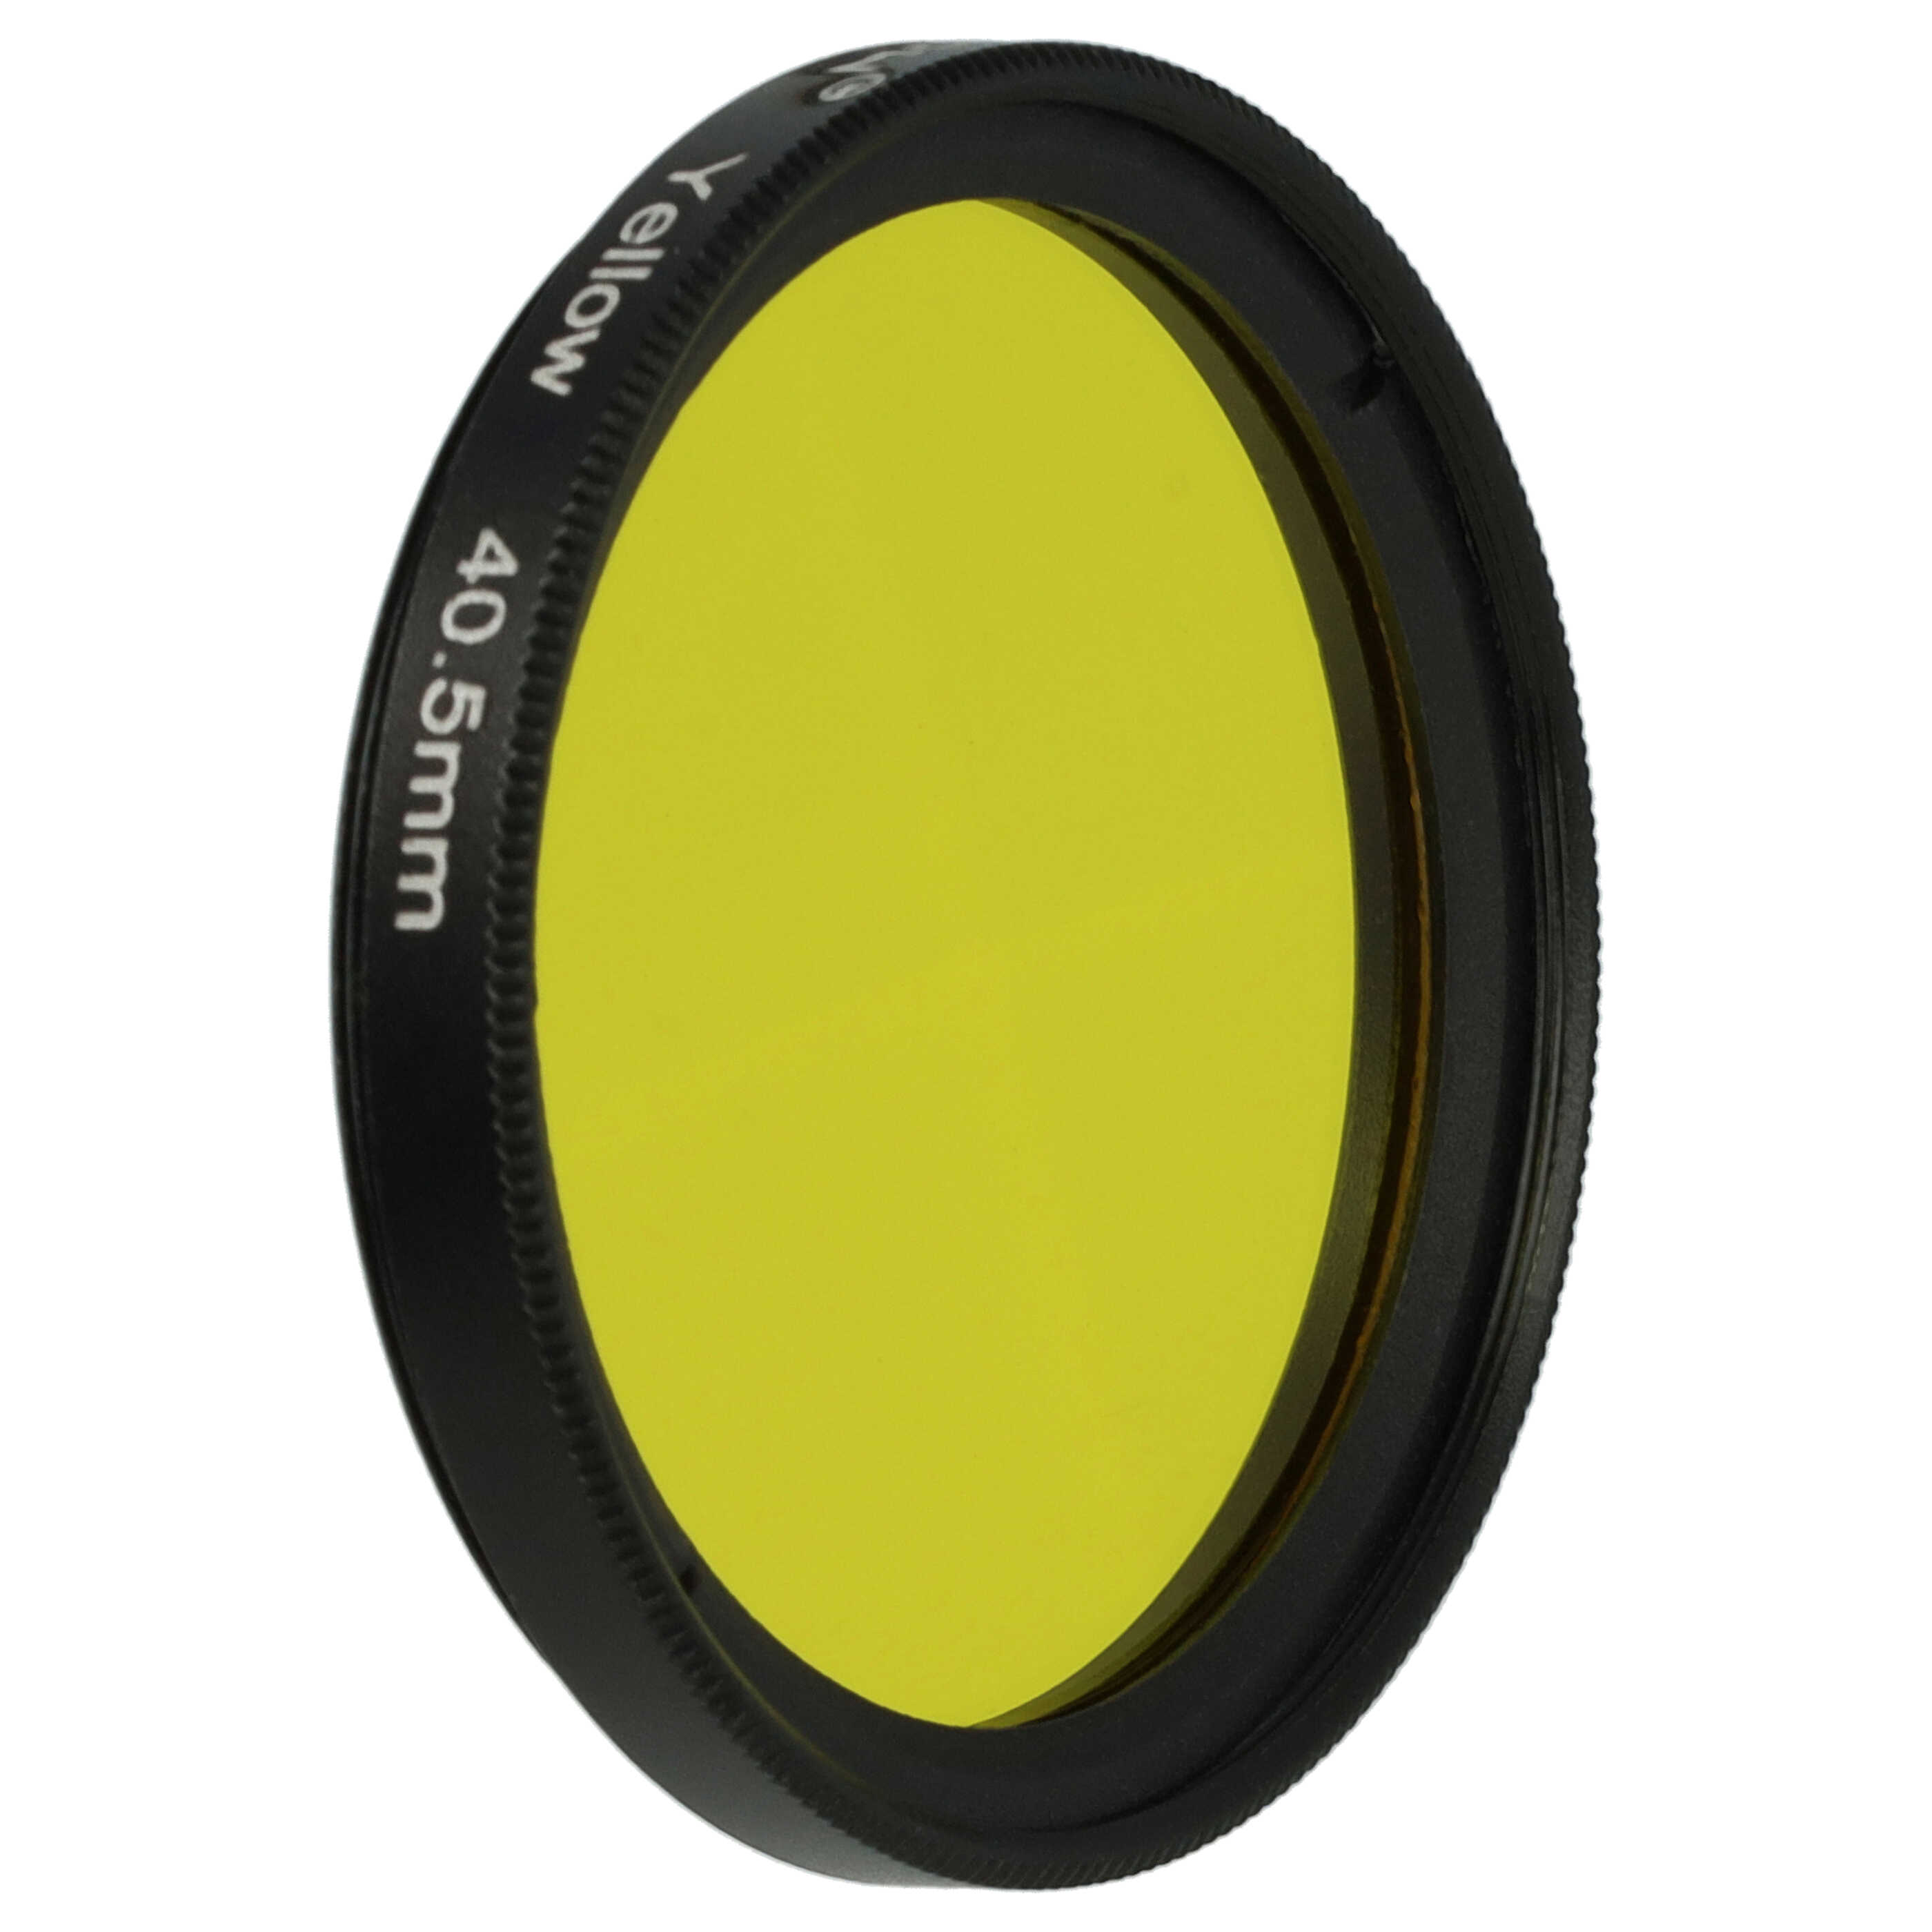 Filtr fotograficzny na obiektywy z gwintem 40,5 mm - filtr żółty